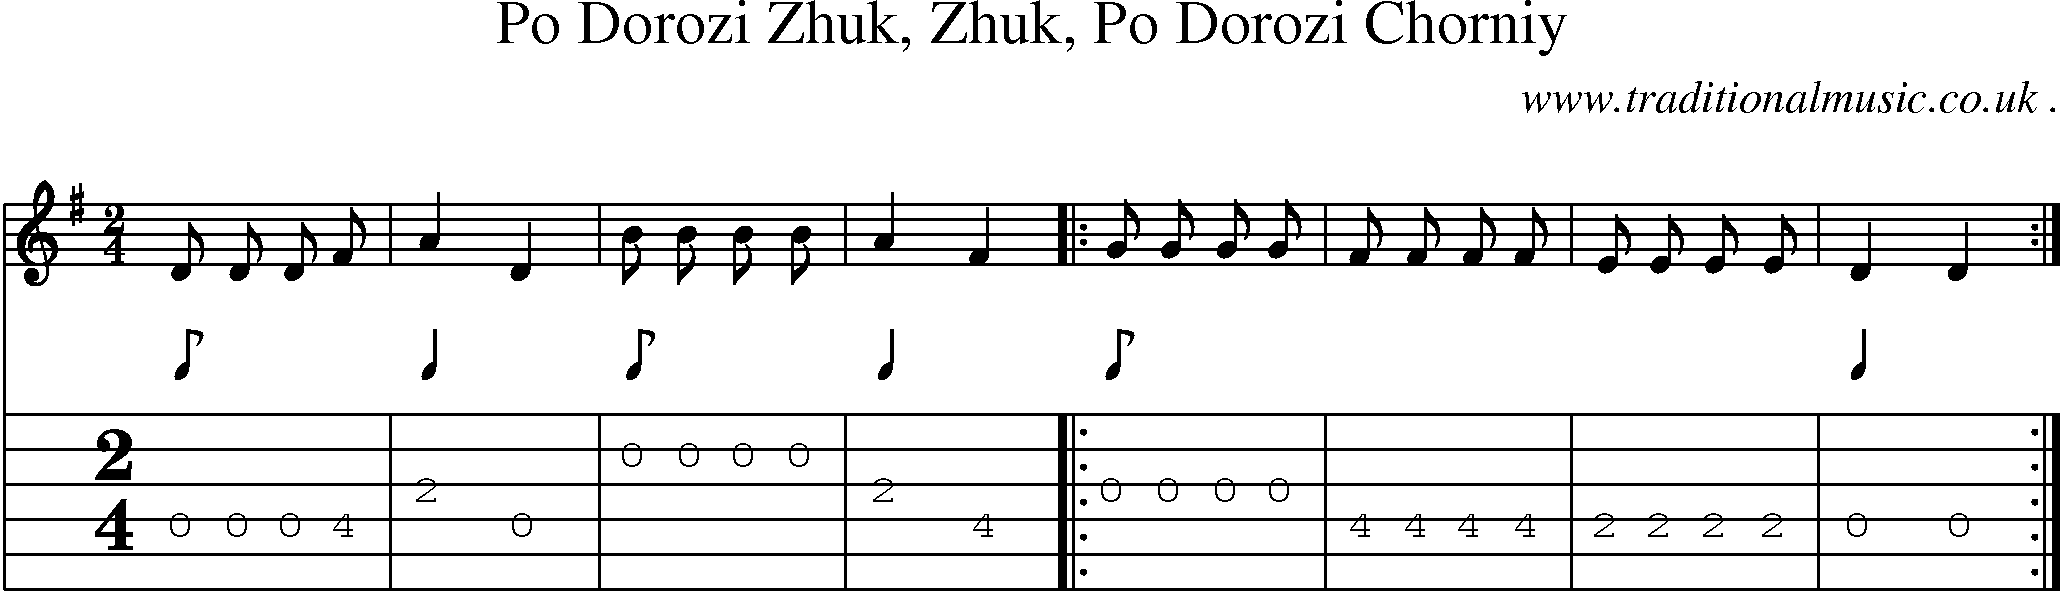 Sheet-Music and Guitar Tabs for Po Dorozi Zhuk Zhuk Po Dorozi Chorniy